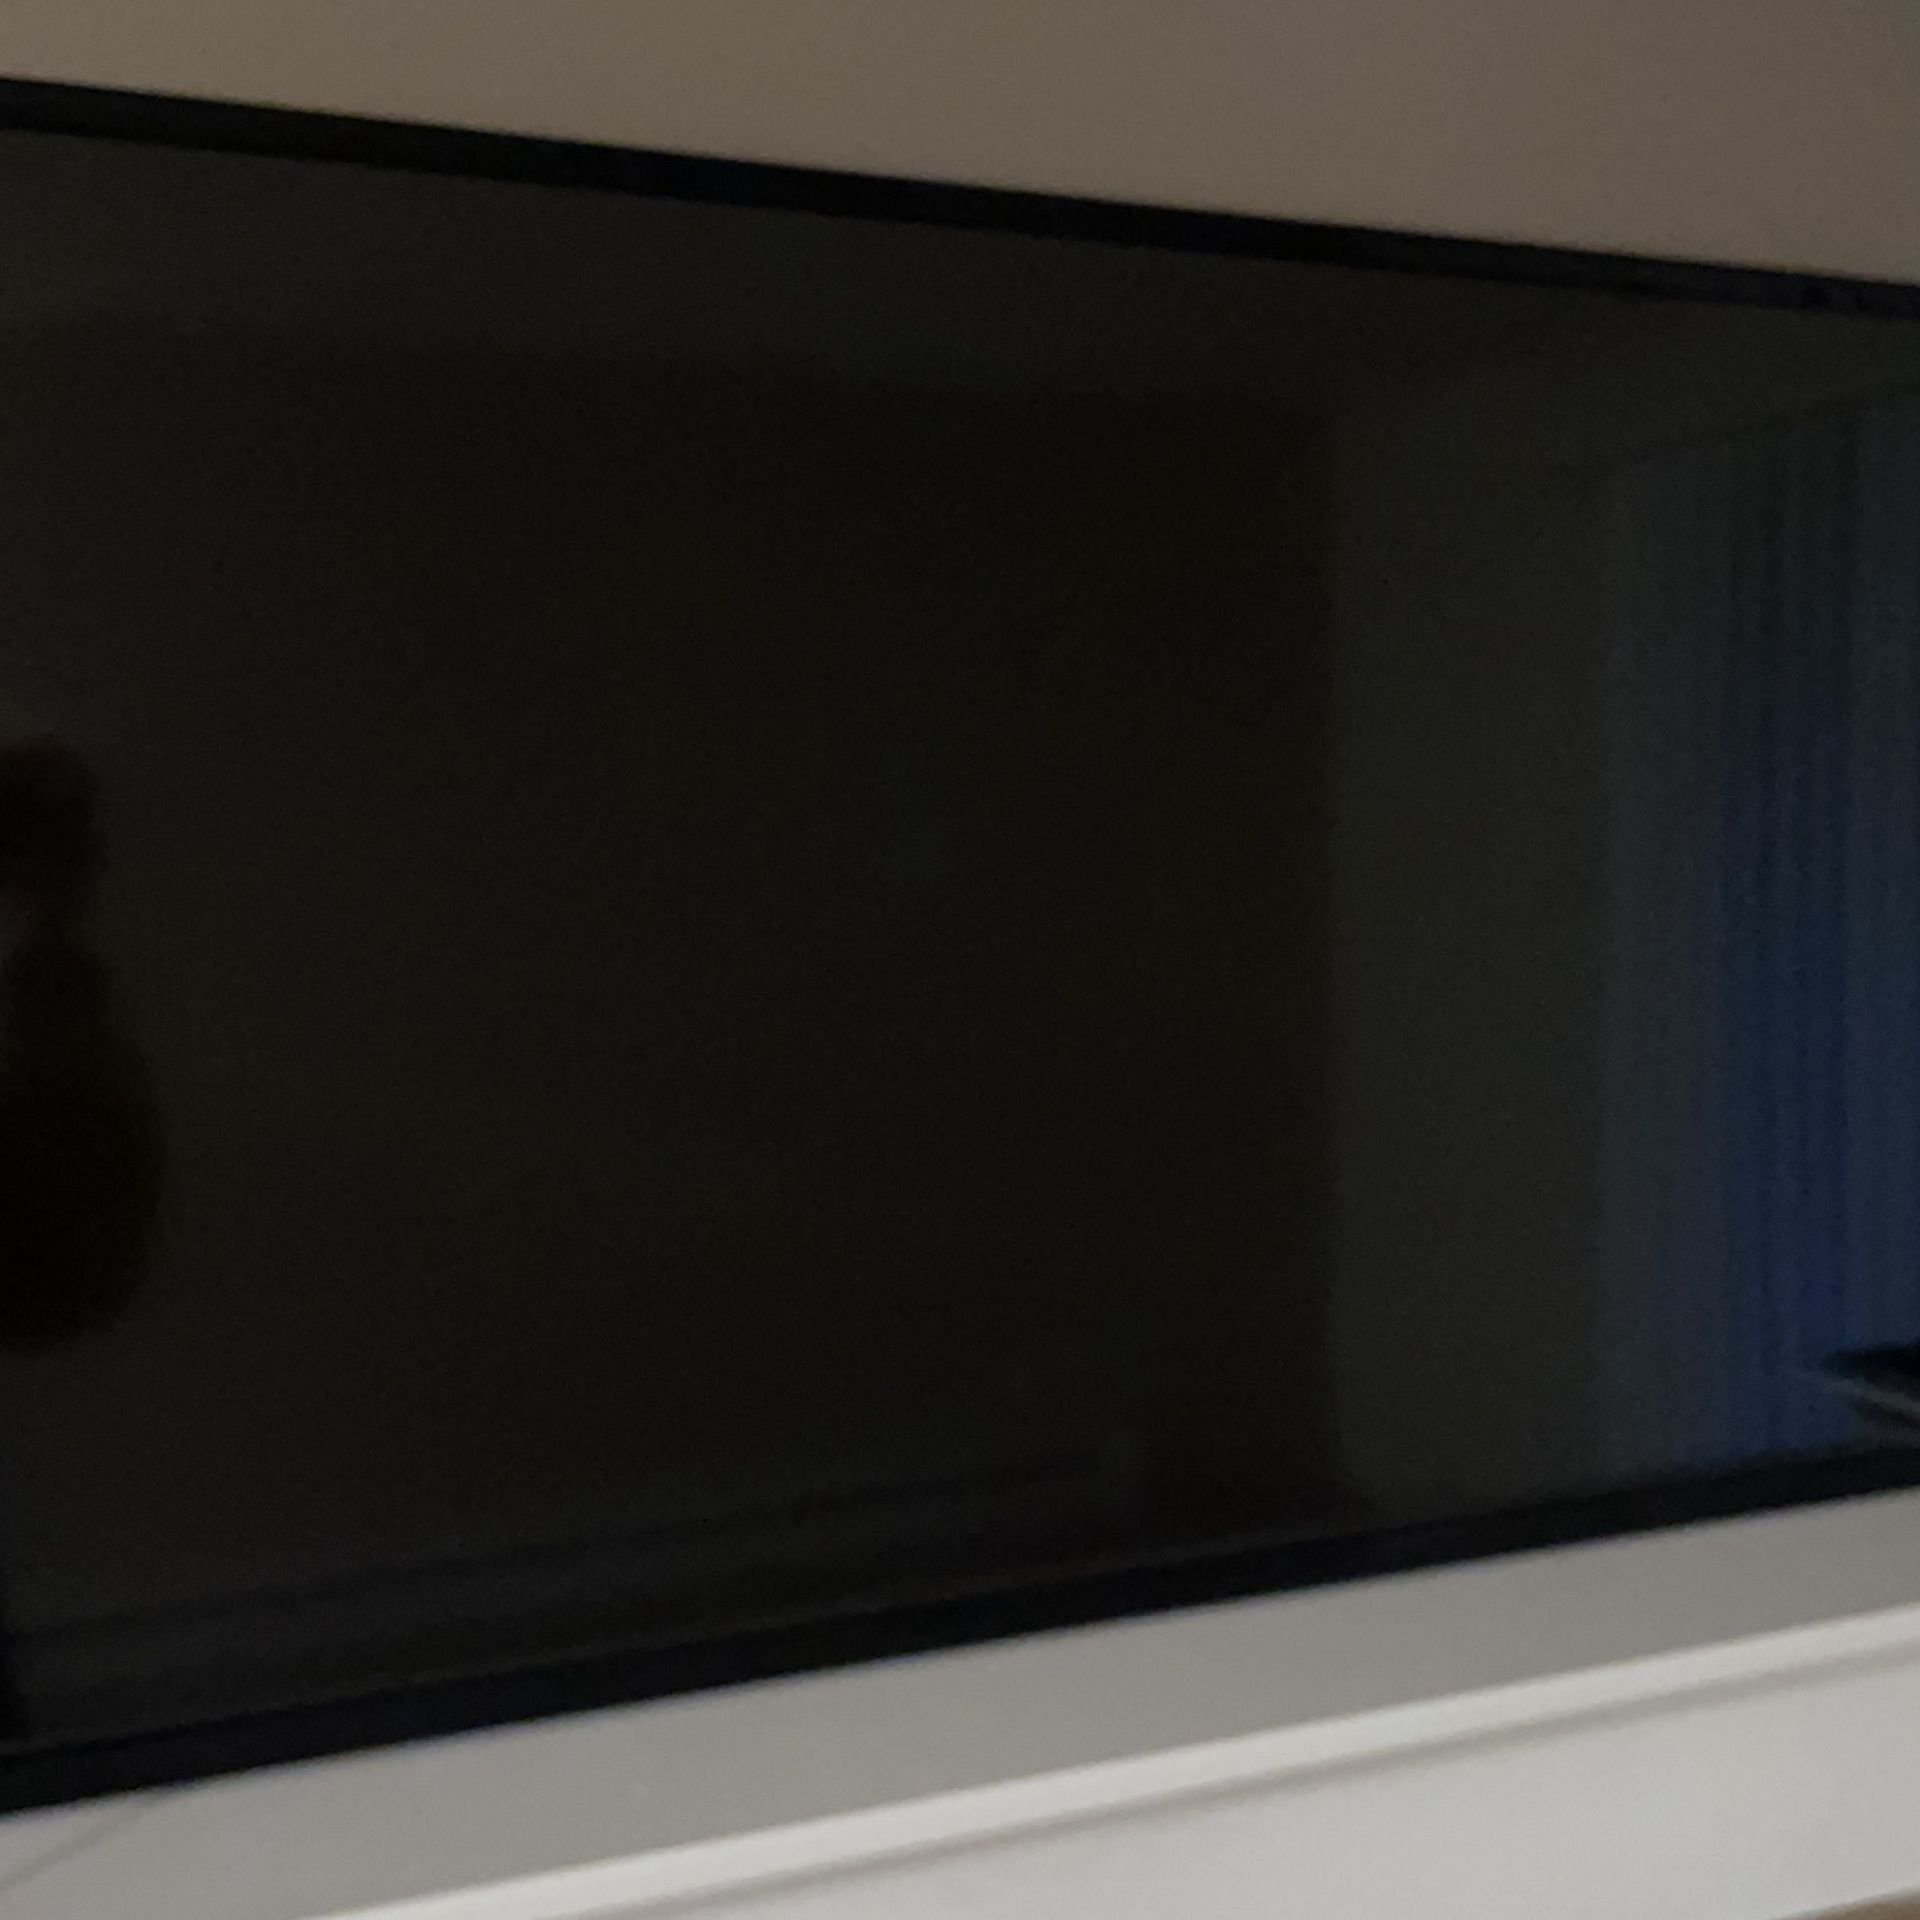 Vizio 43 inch TV